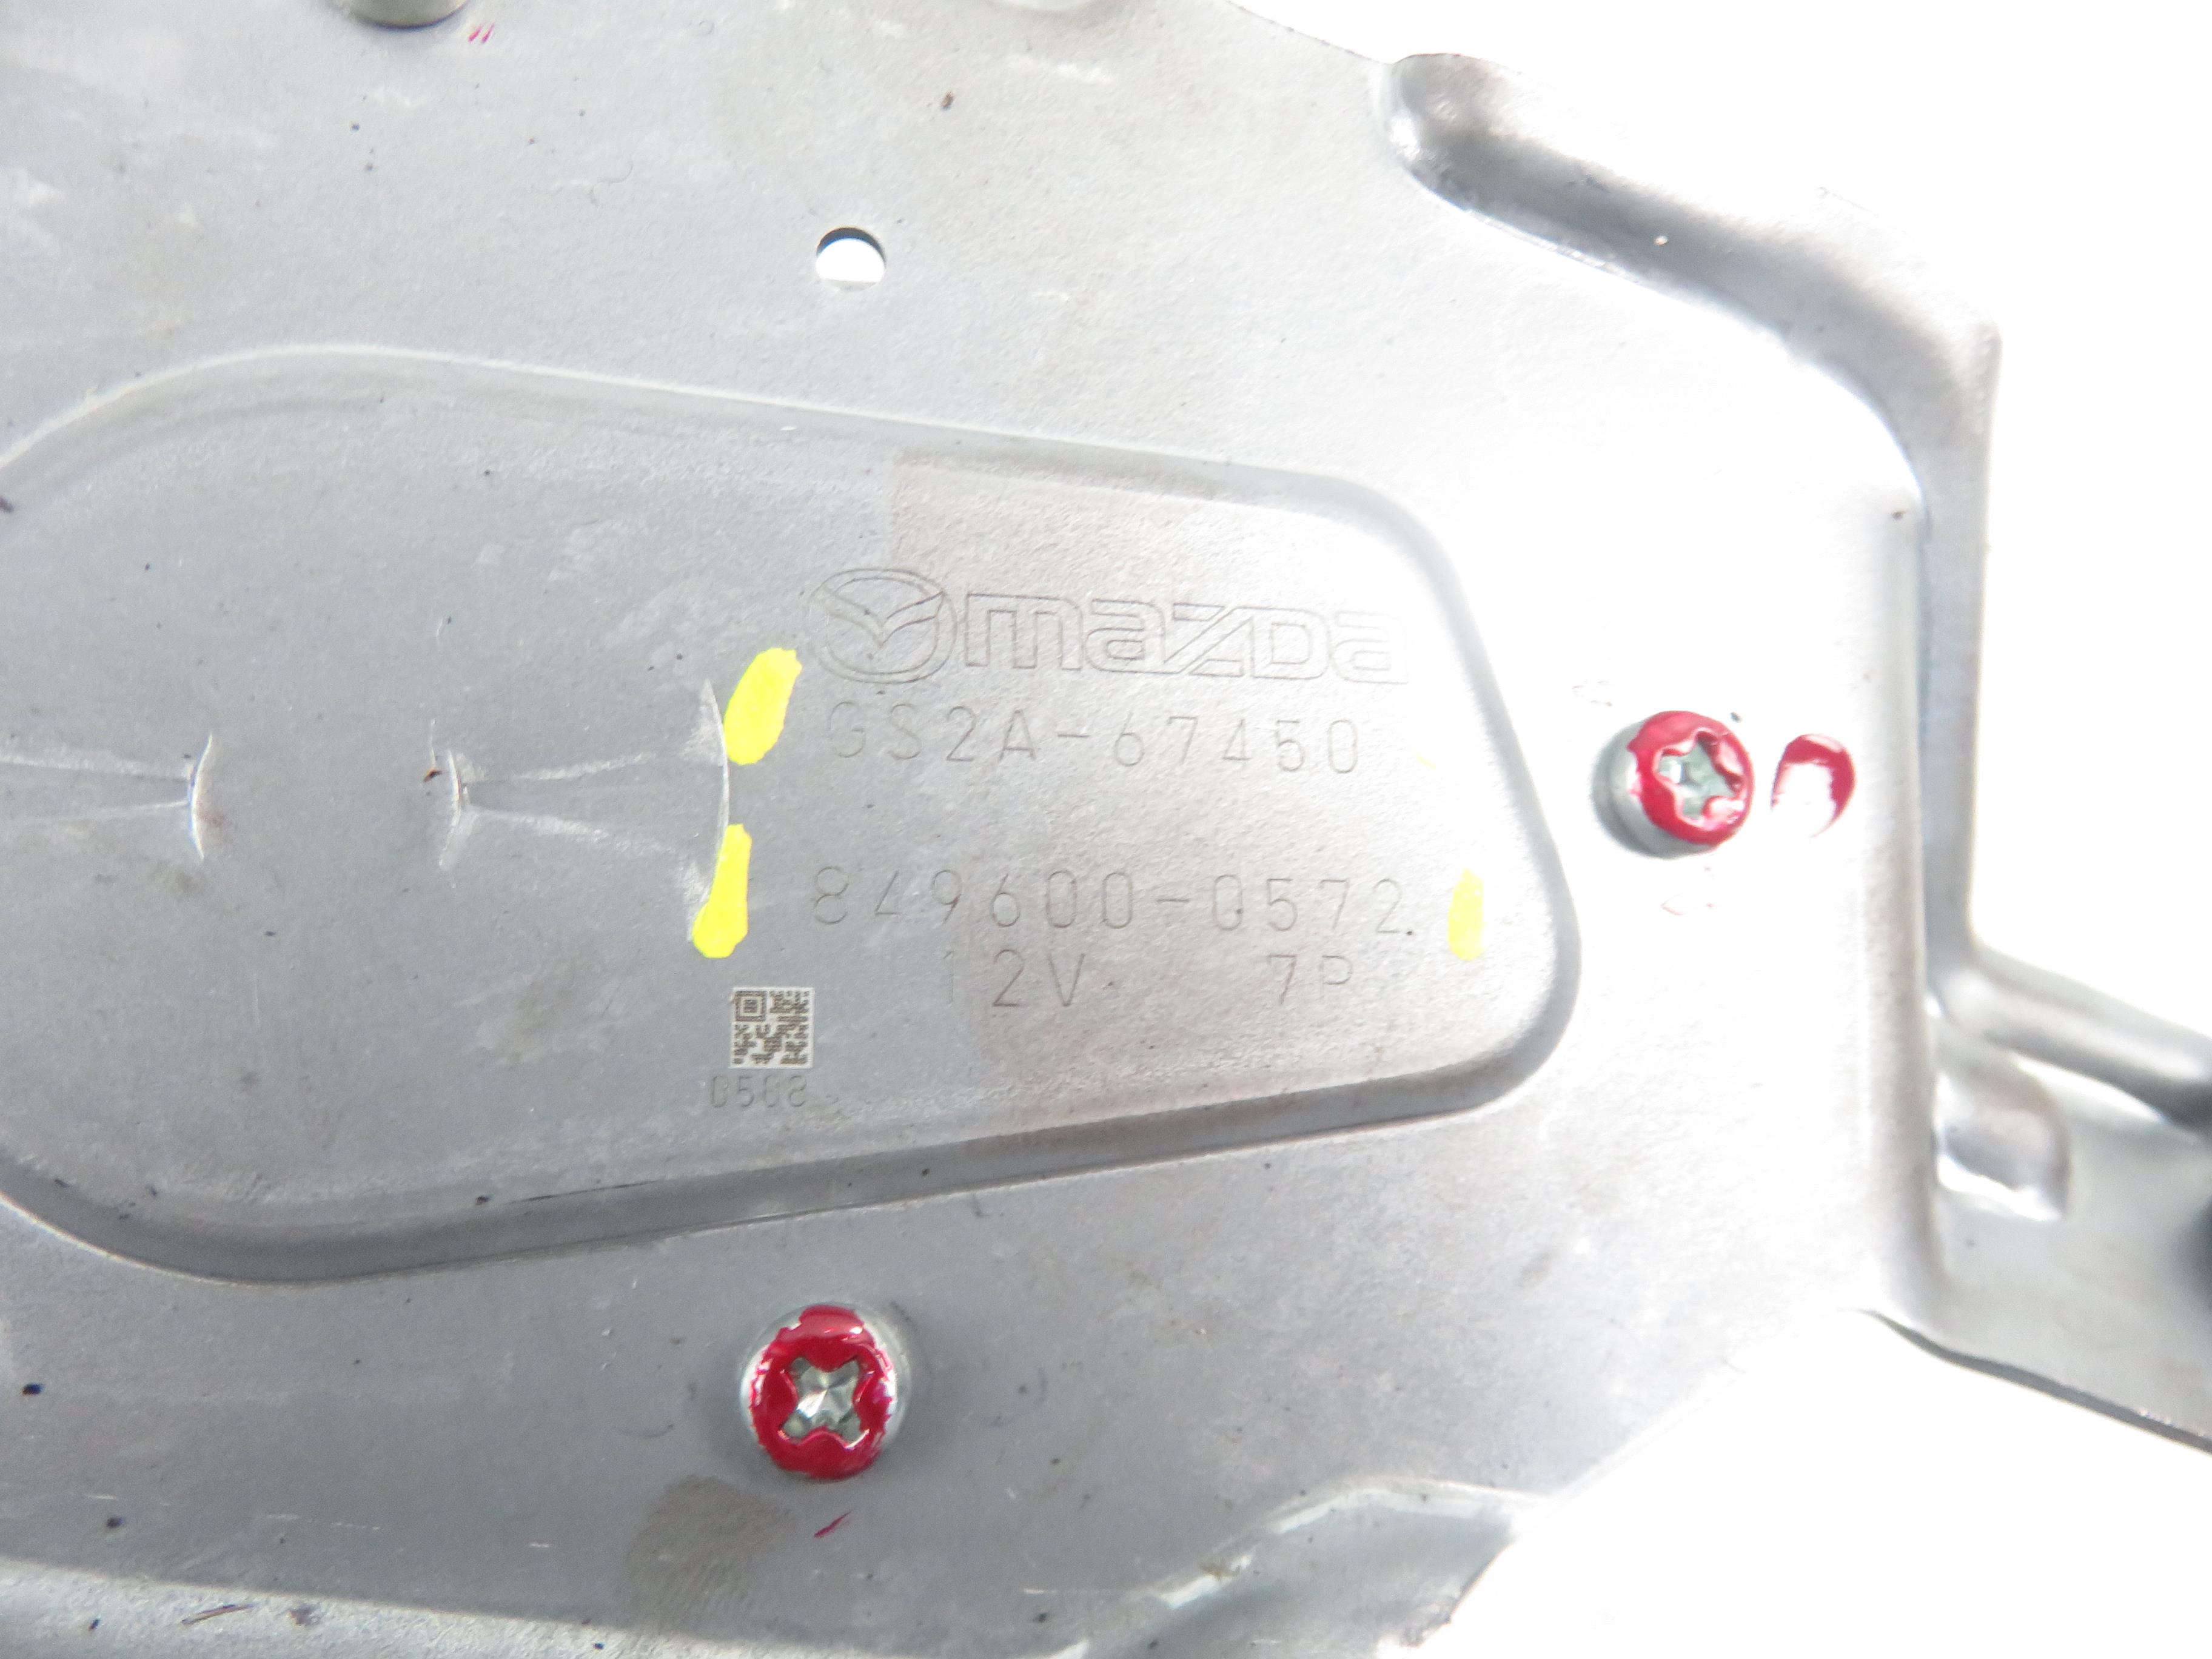 MAZDA 6 GH (2007-2013) Tailgate  Window Wiper Motor 8496000572, GS2A67450 20781489